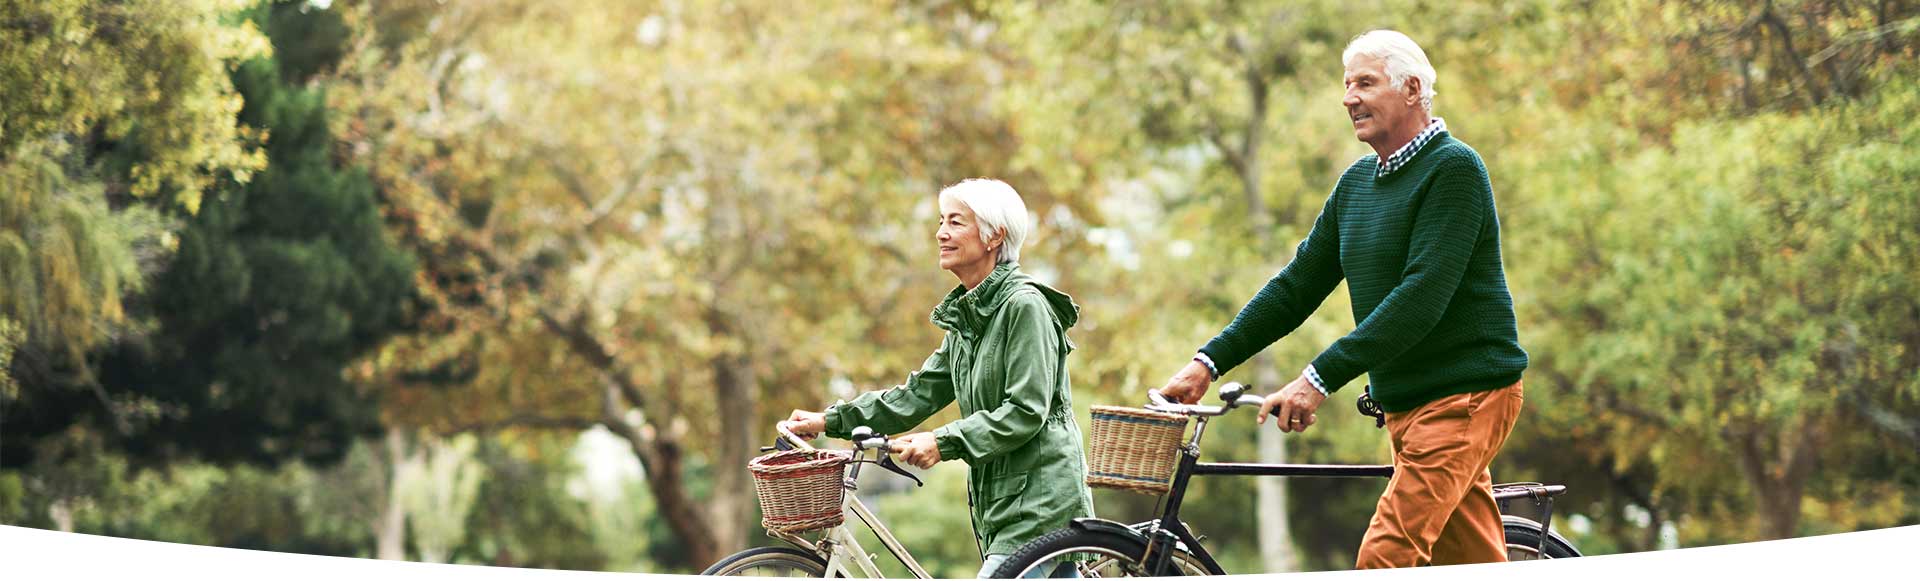 Oudere man en vrouw wandelen met fiets aan de hand